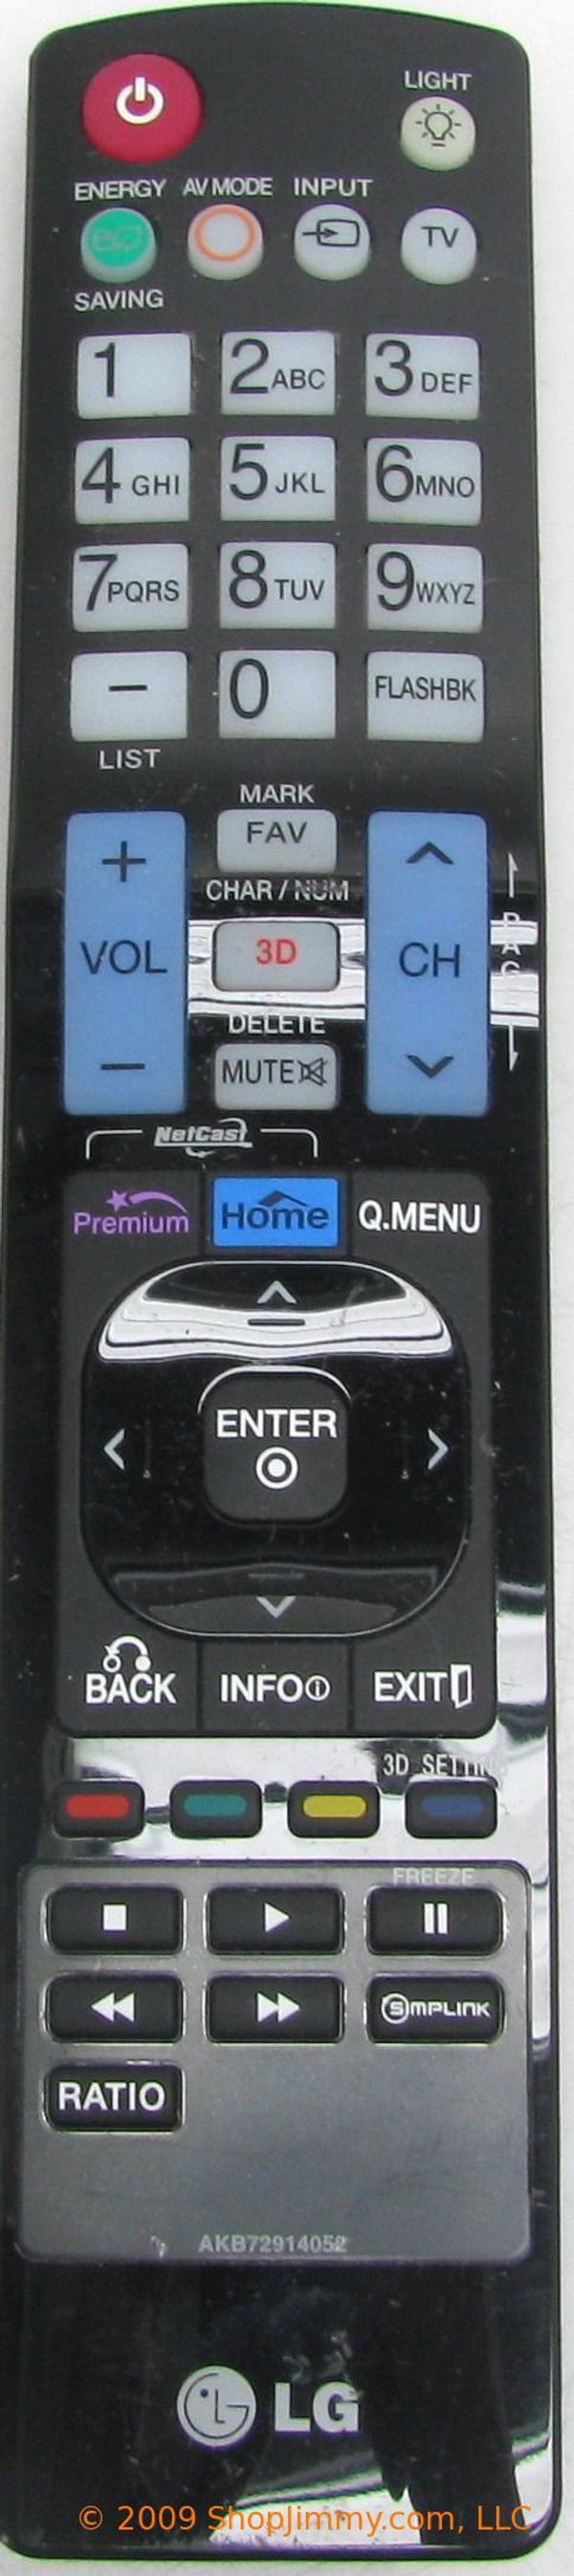 LG AKB72914052 Remote Control